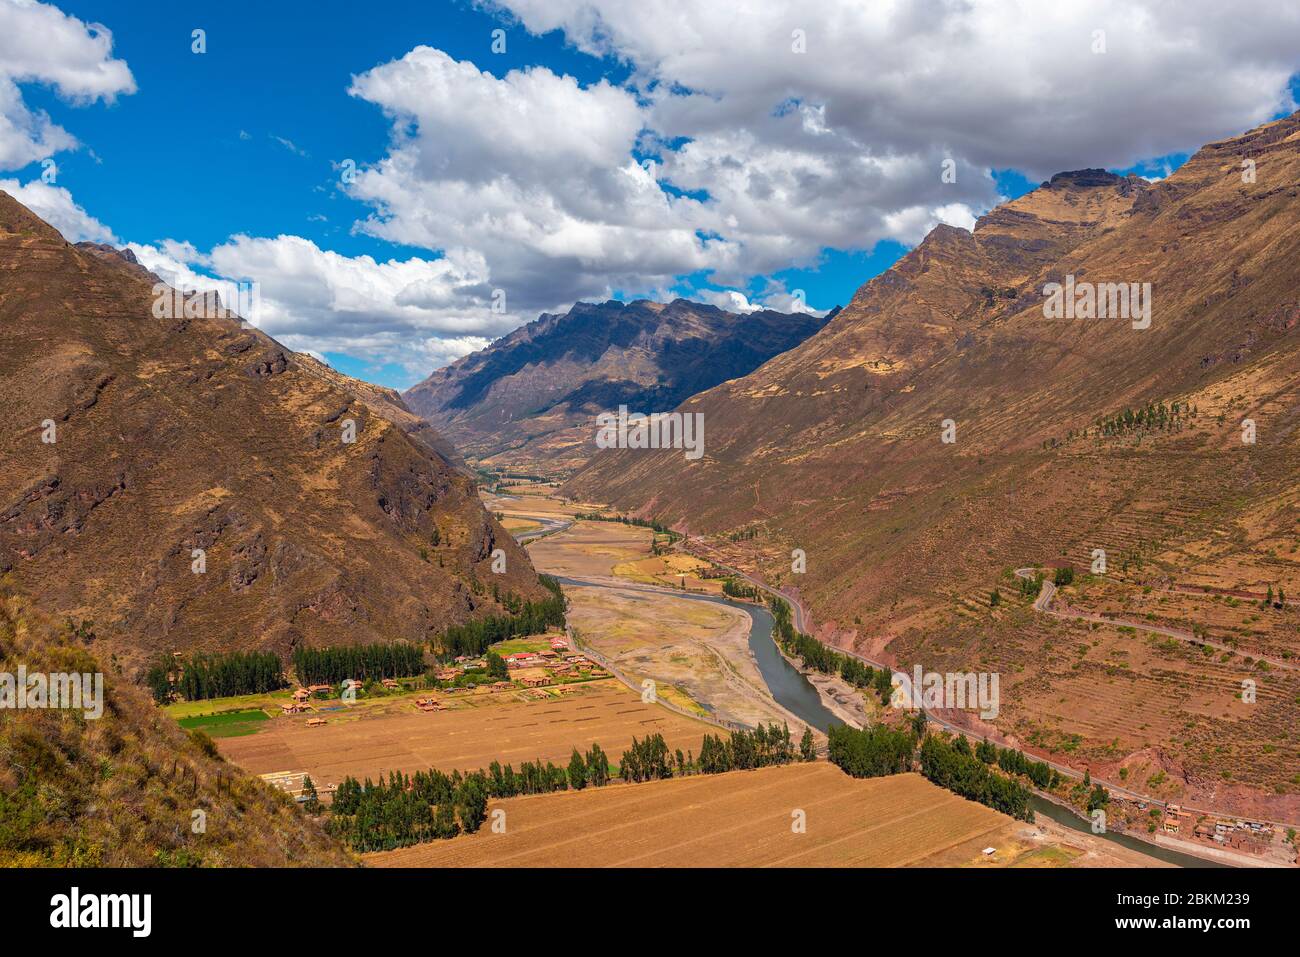 Paesaggio della Valle Sacra degli Inca con il fiume Urubamba e la catena montuosa delle Ande, Pisac, Provincia di Cusco, Perù. Foto Stock